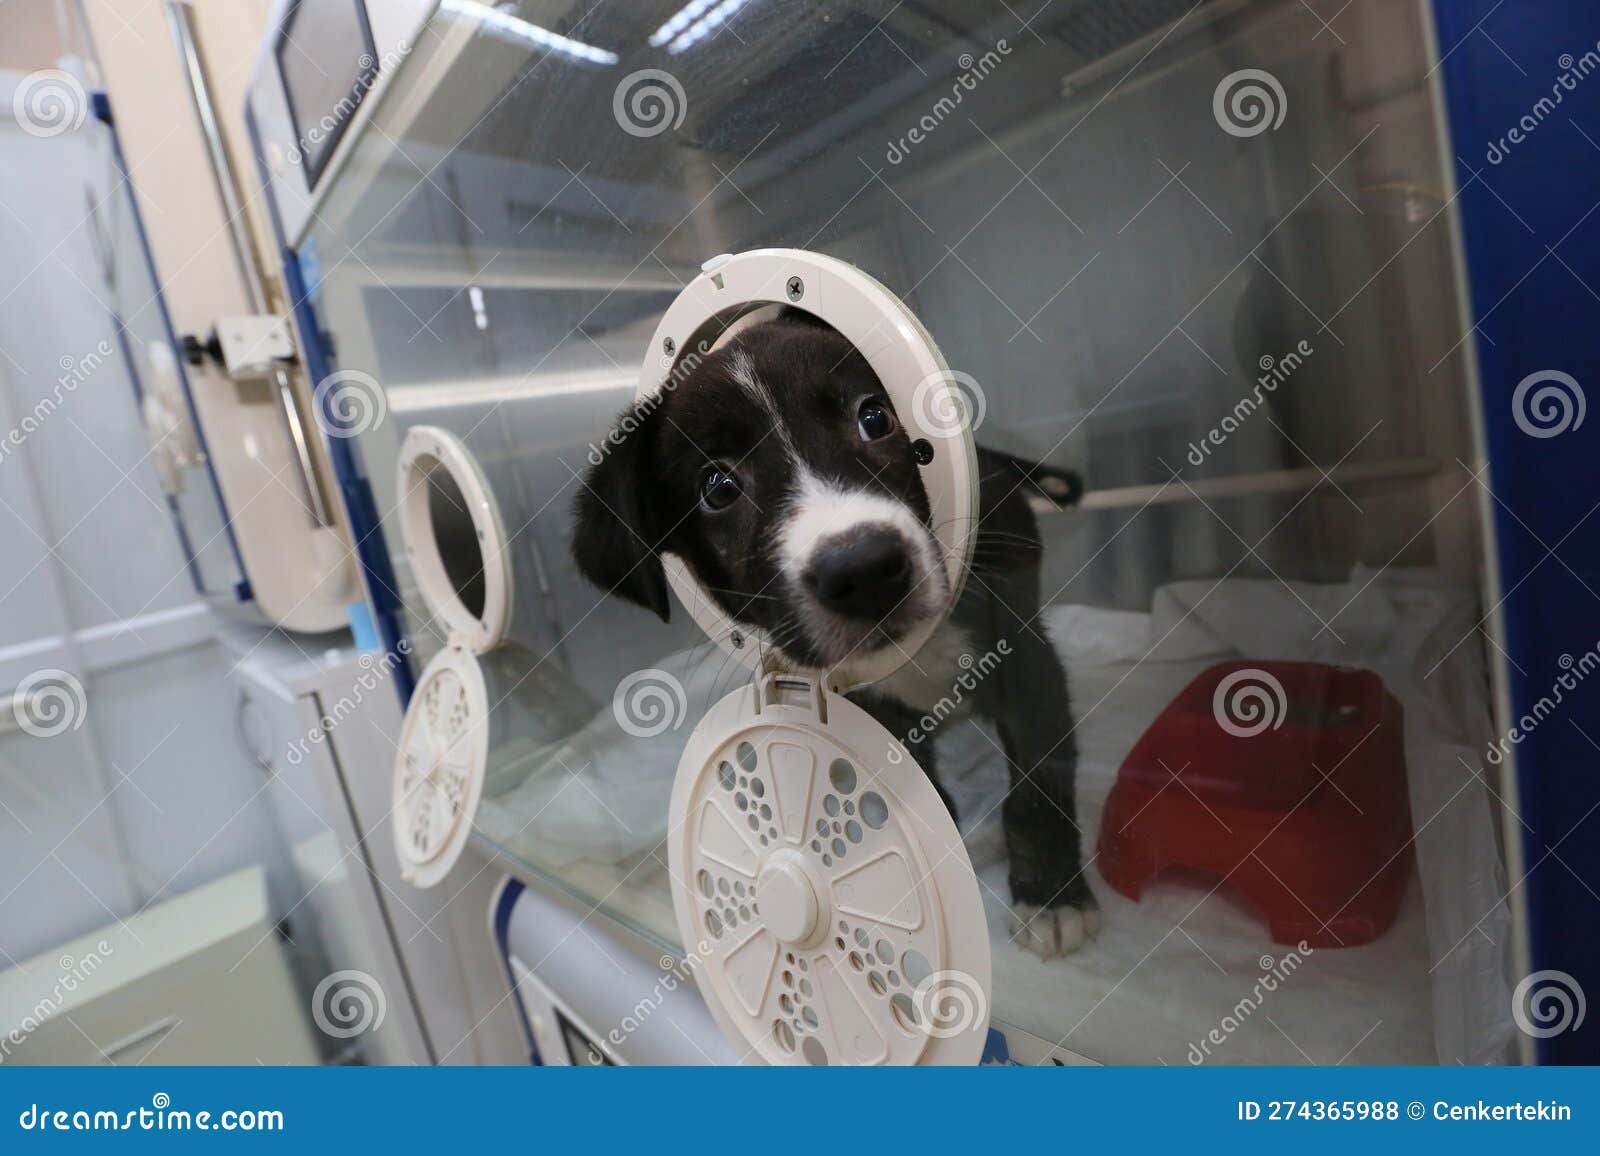 sick puppy in an incubator